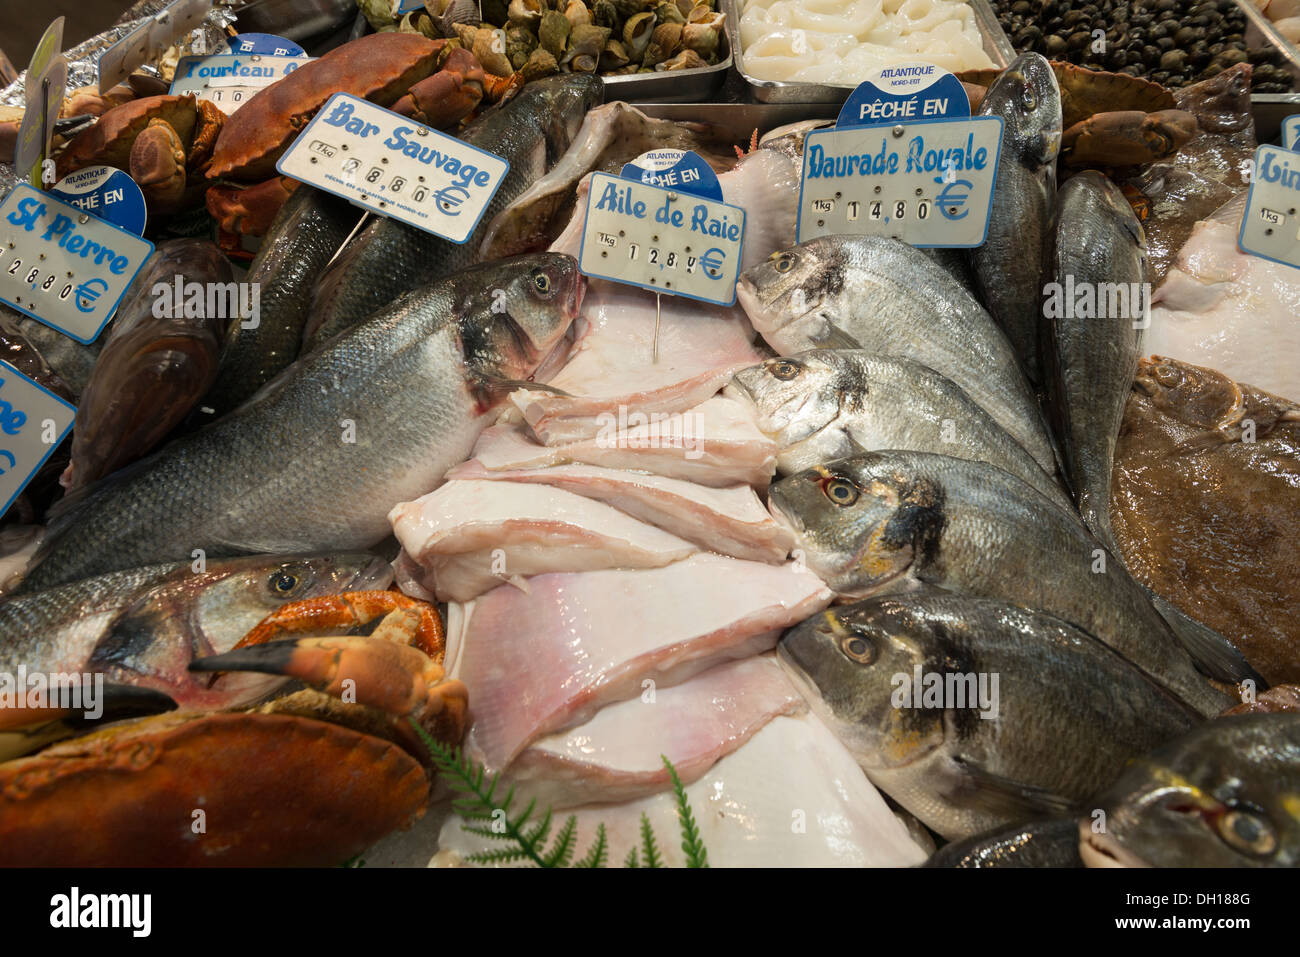 Du poisson frais dans le marché couvert de la Place d'Aligre, Paris, France Banque D'Images